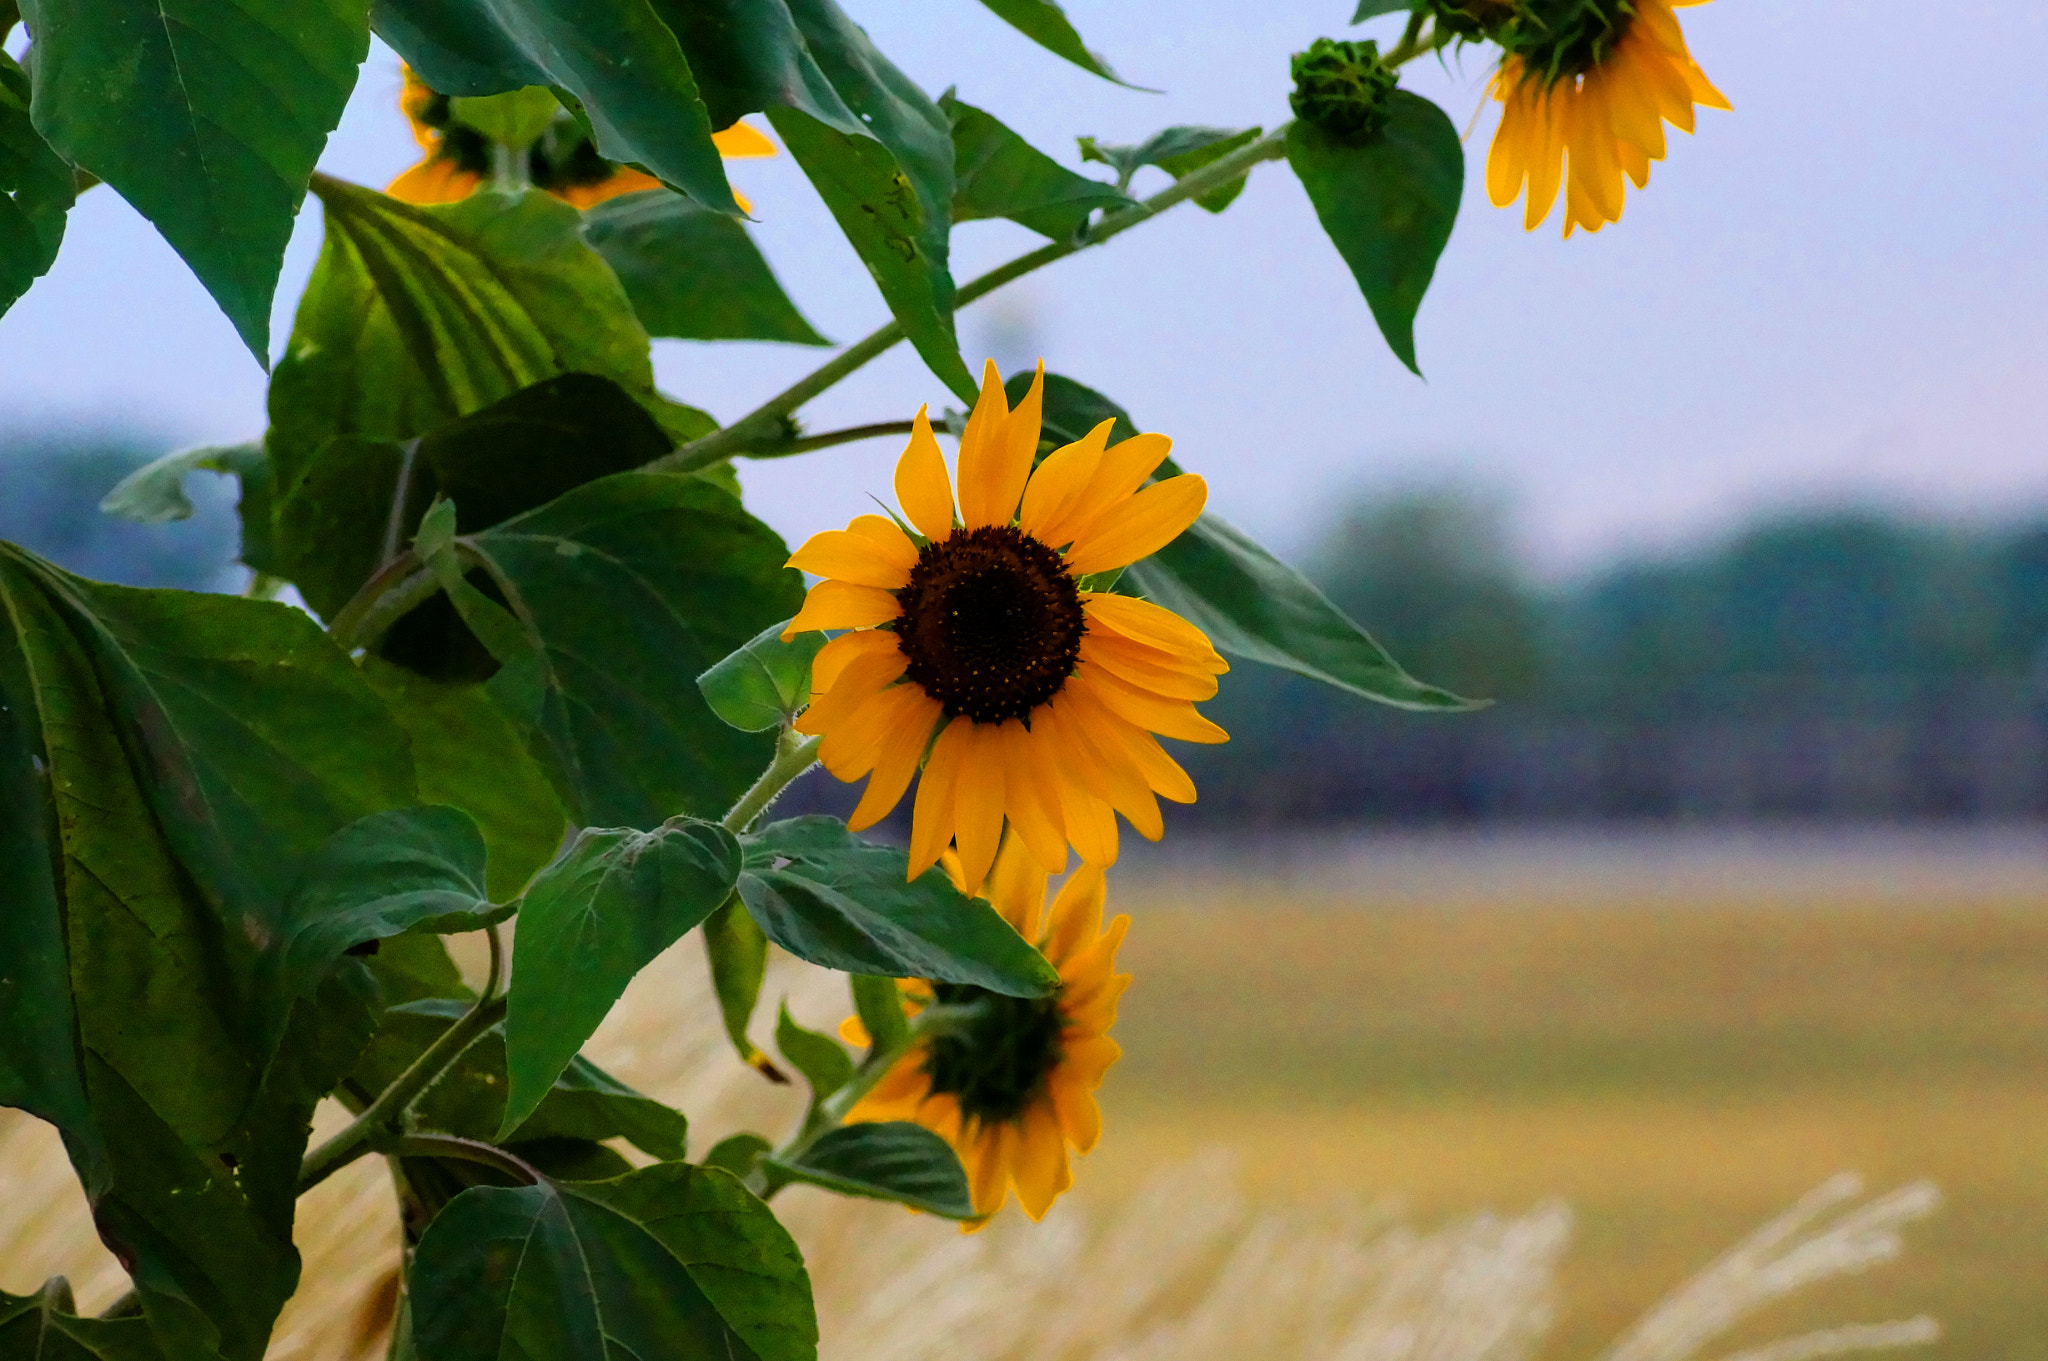 Sony SLT-A57 sample photo. Sunflower photography